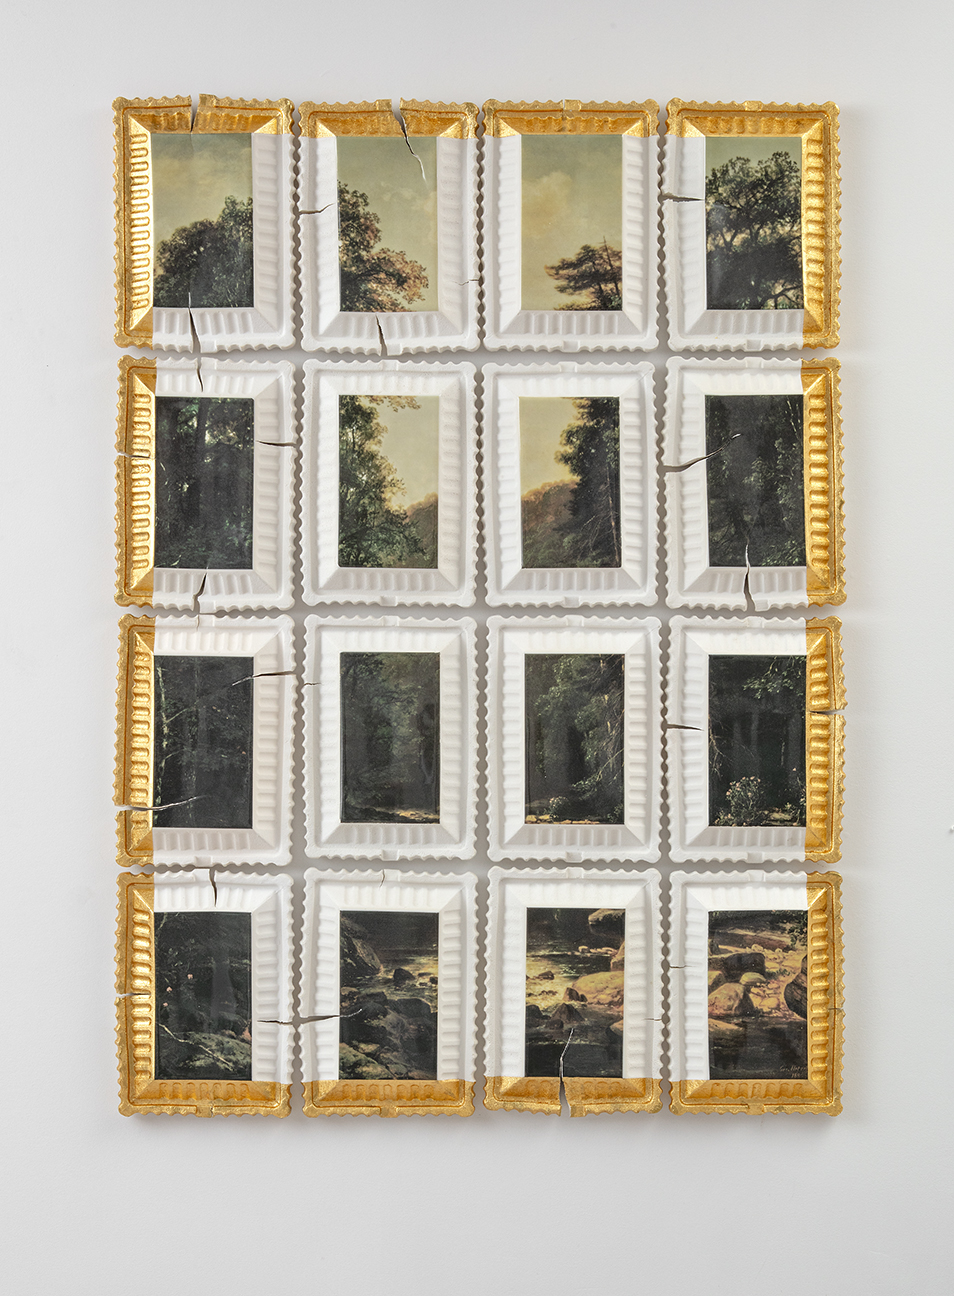 Evan Hauser, "Preservation and Use #3 (Landscape with River, George Hetzel, 1880)", 2018, porcelain, gold leaf, 62 x 42 x 2.5"